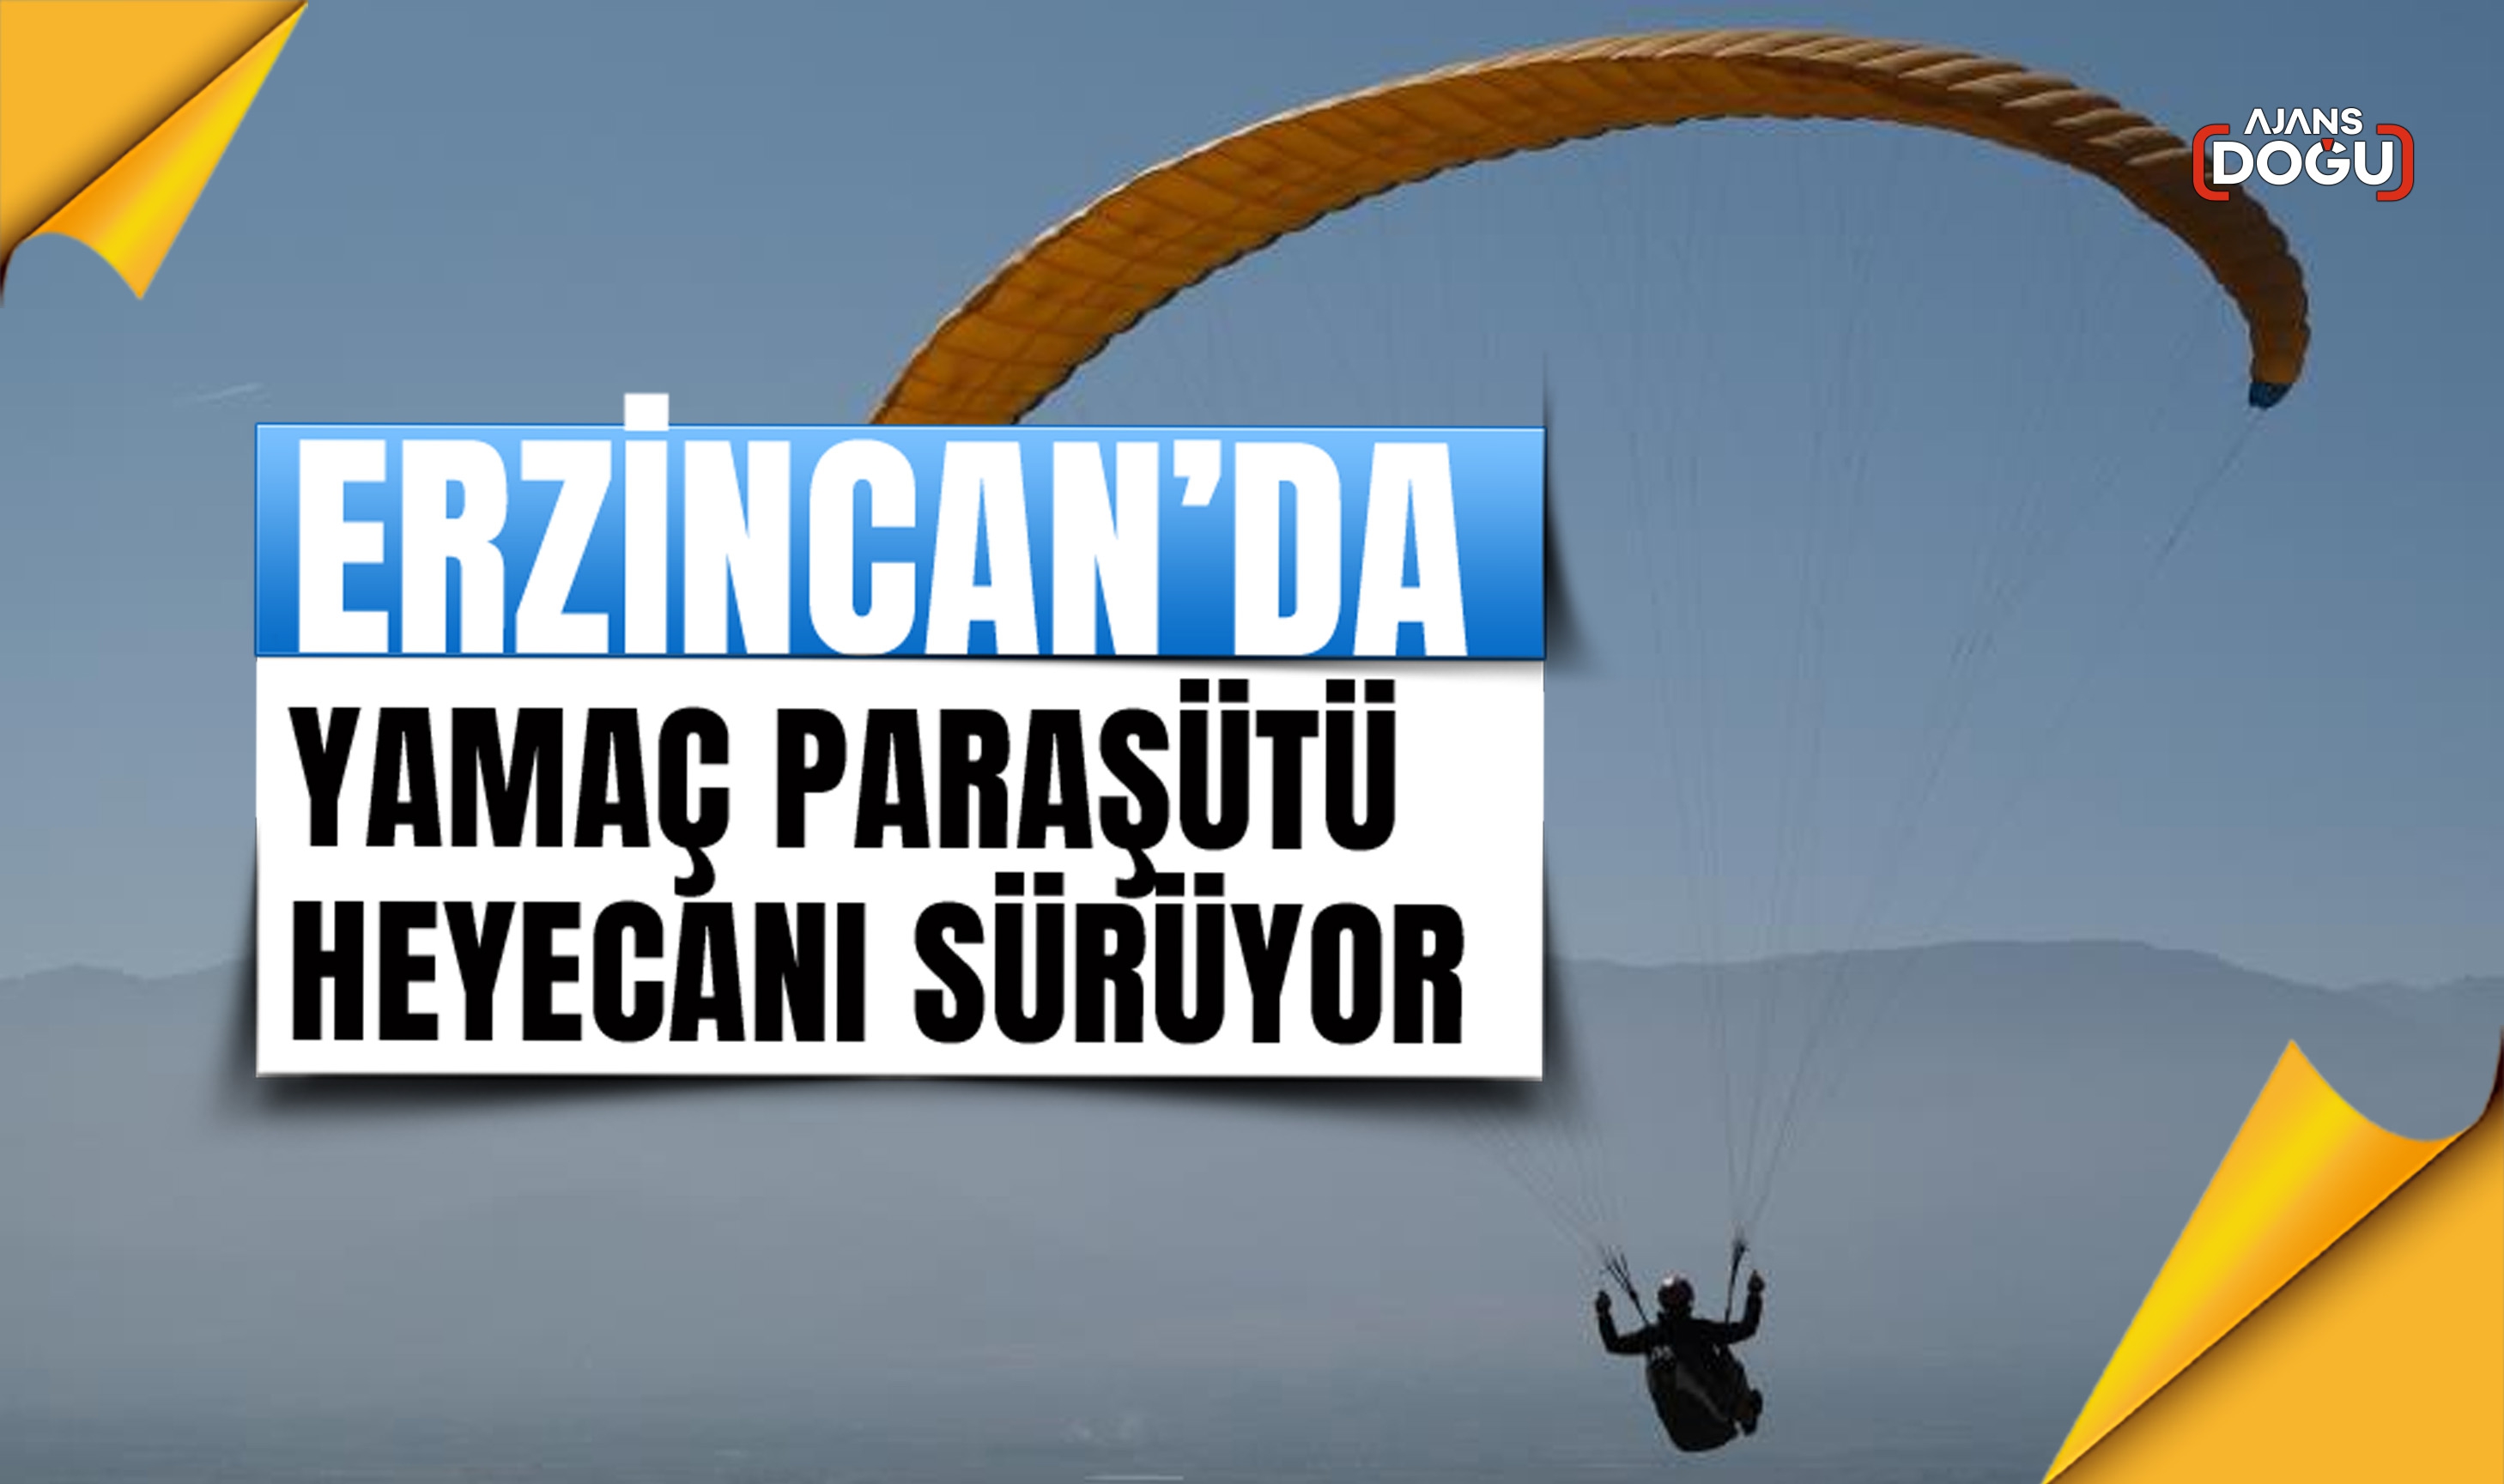 Erzincan’da yamaç paraşütü heyecanı sürüyor